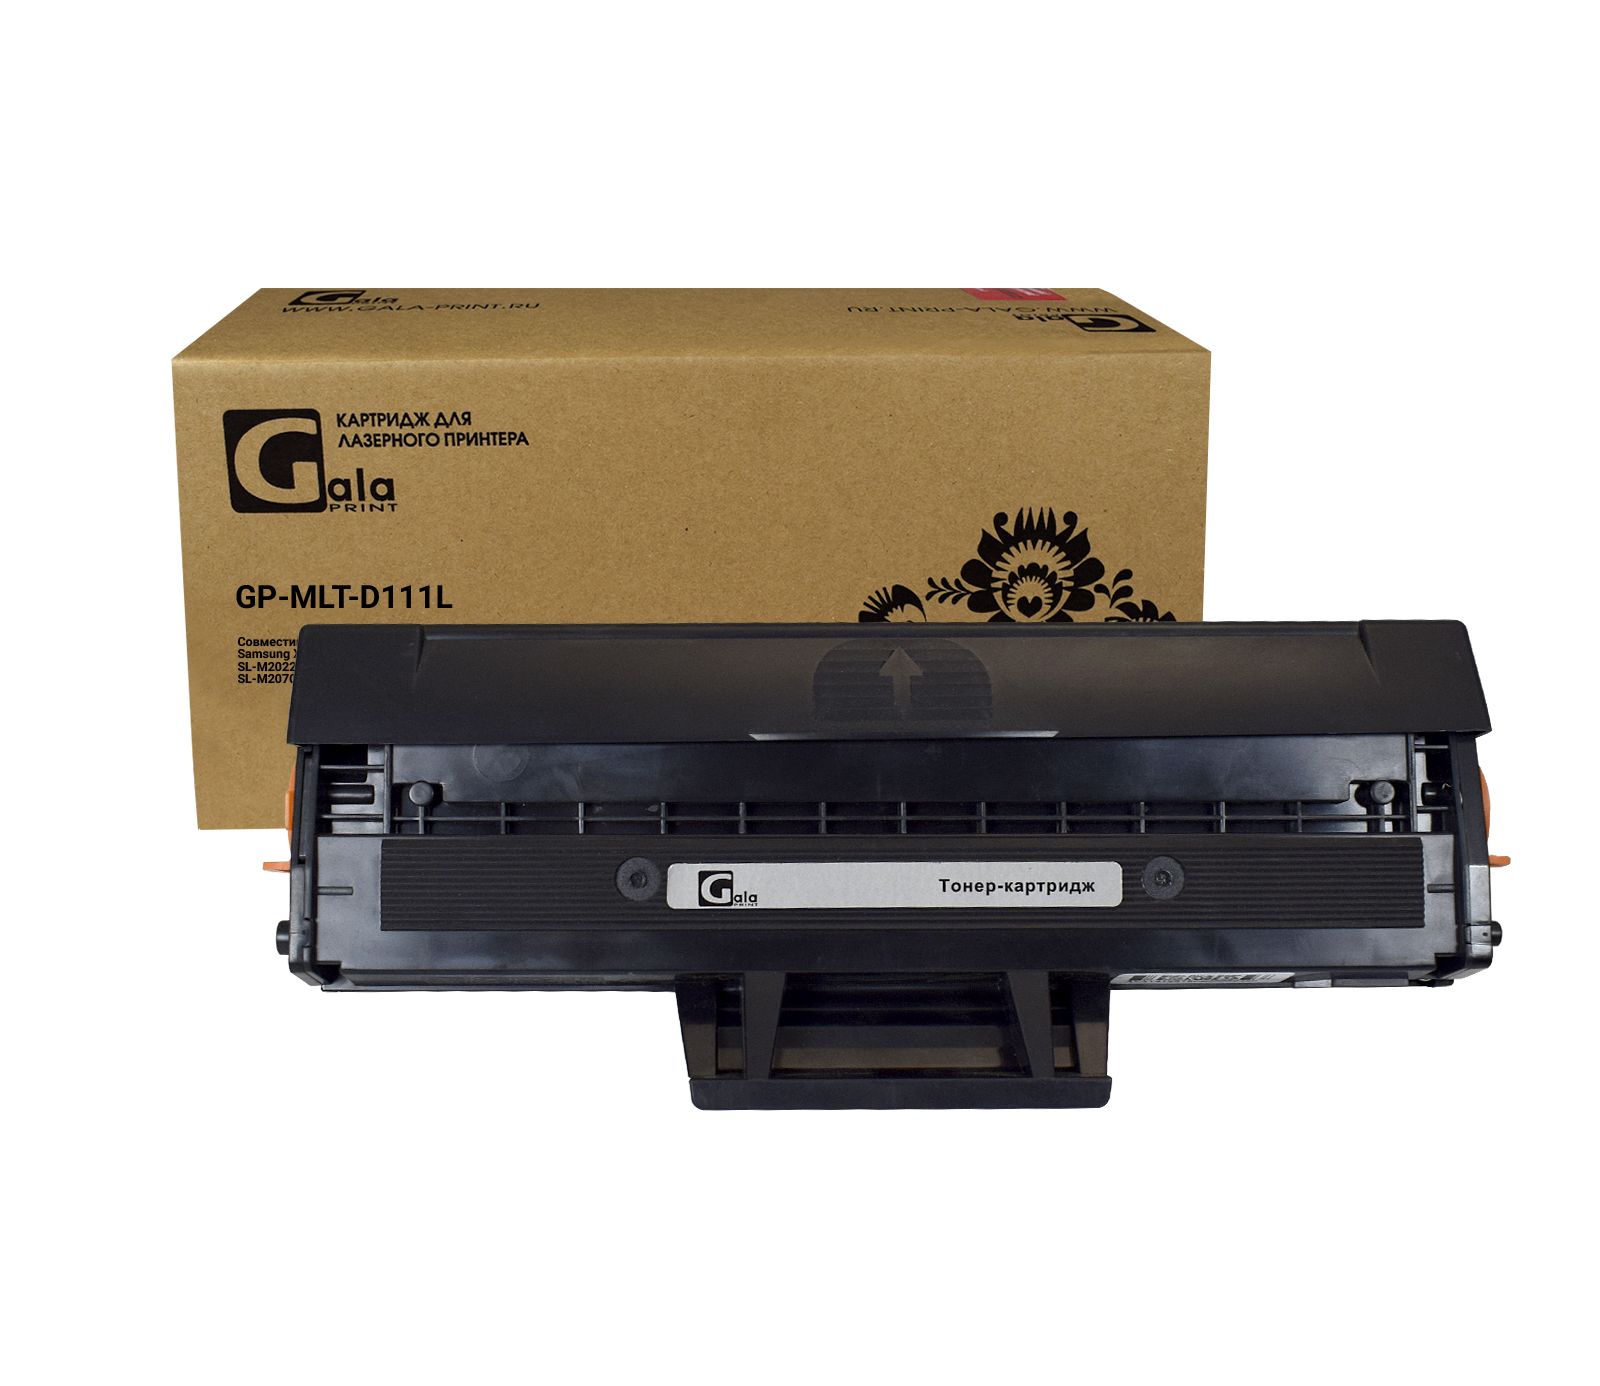 Картридж GP-MLT-D111L для принтеров Samsung Xpress M2020/M2022/M2070 1800 копий GalaPrint